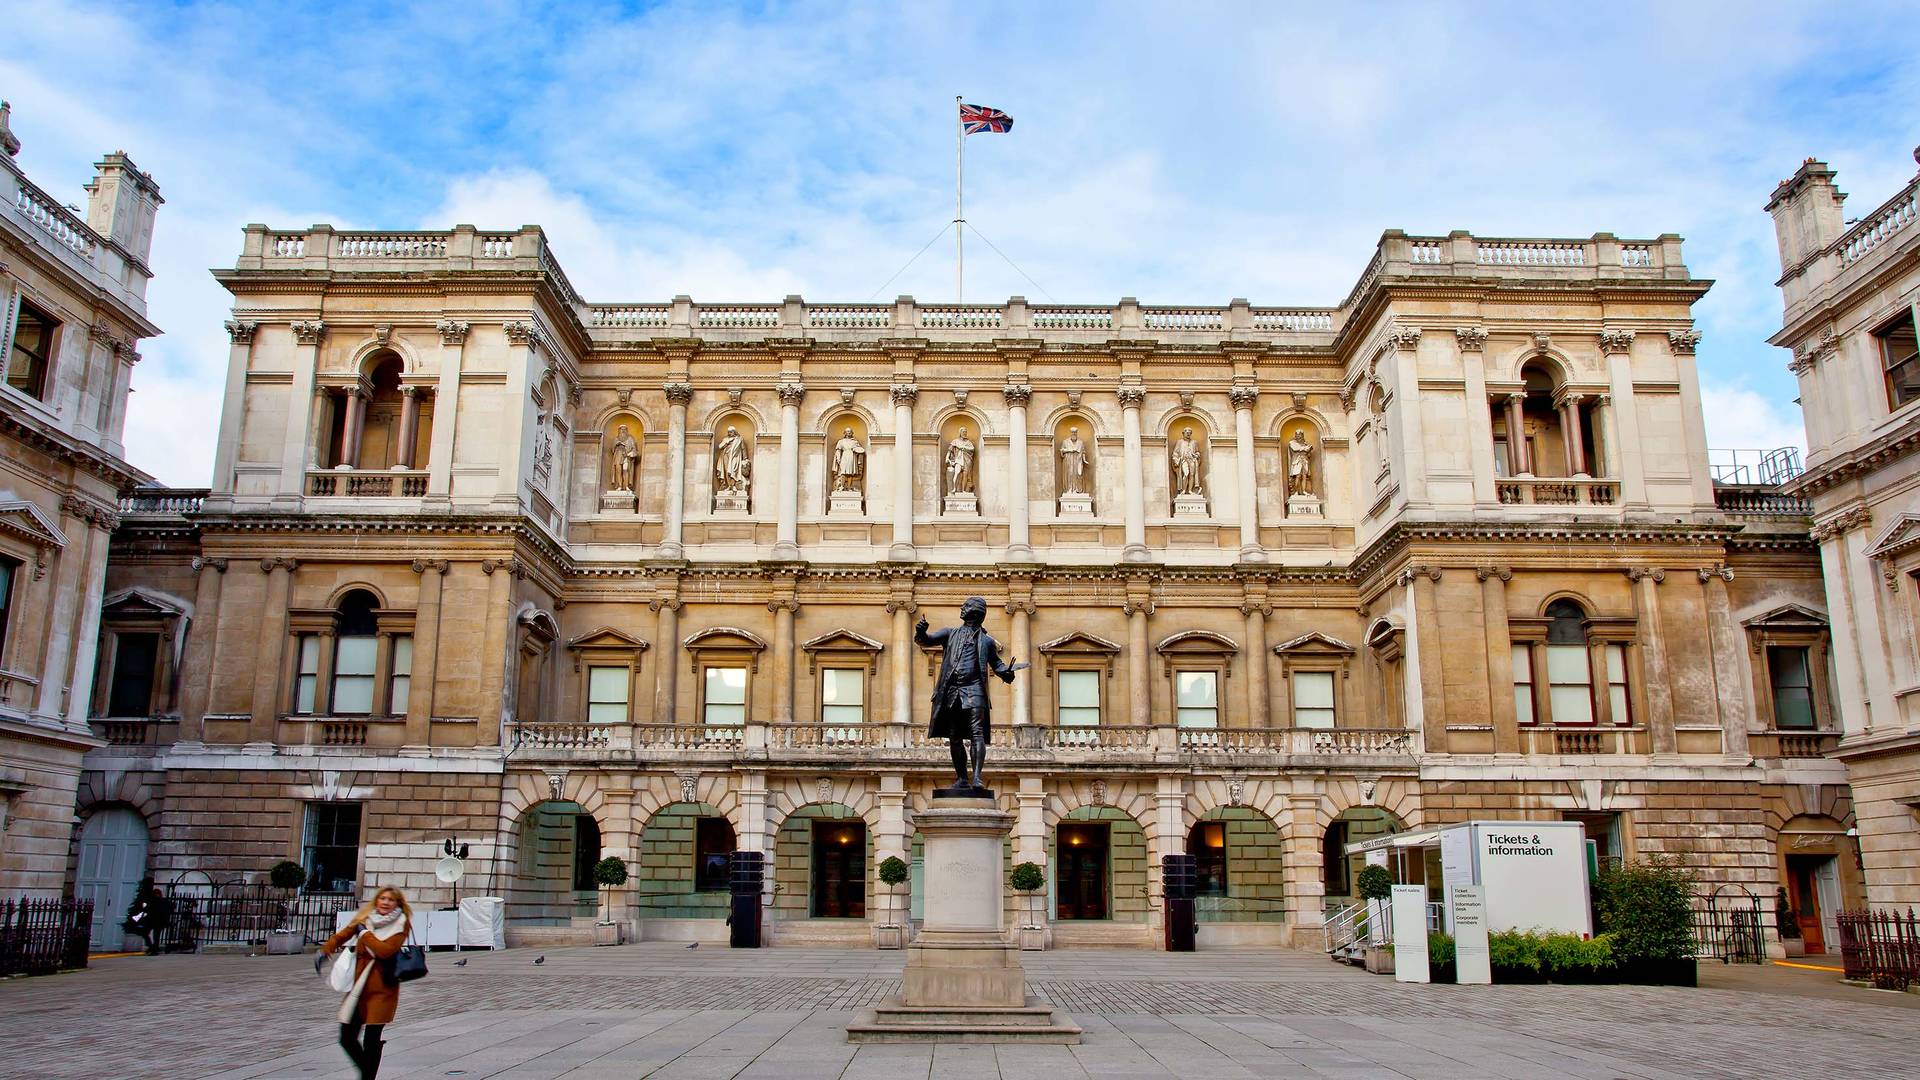 Burlington House, the Royal Academy in London